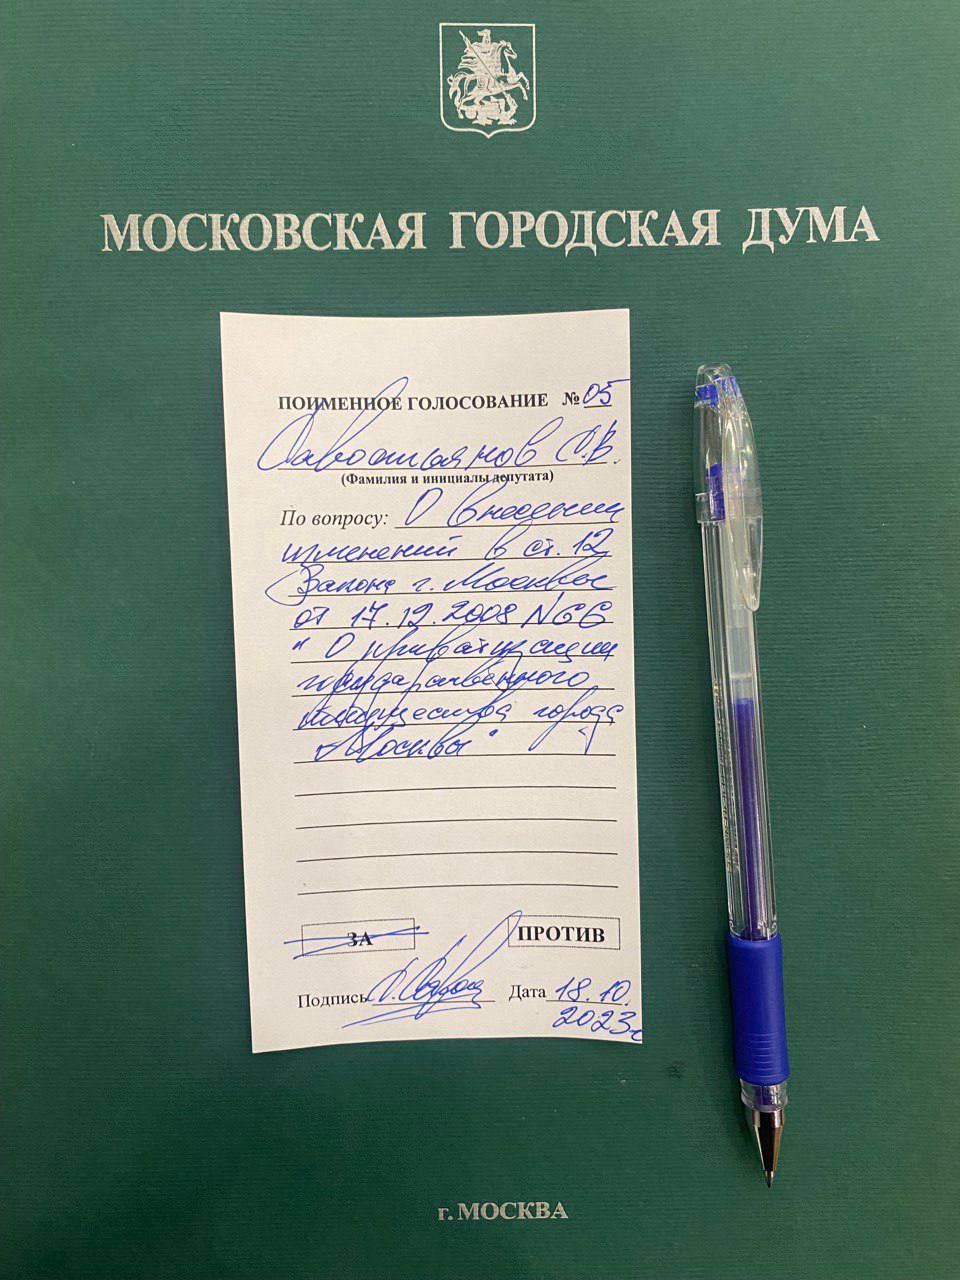 Мосгордума большинством голосов ЕР, приняла изменения в Закон о приватизации госимущества г.Москвы